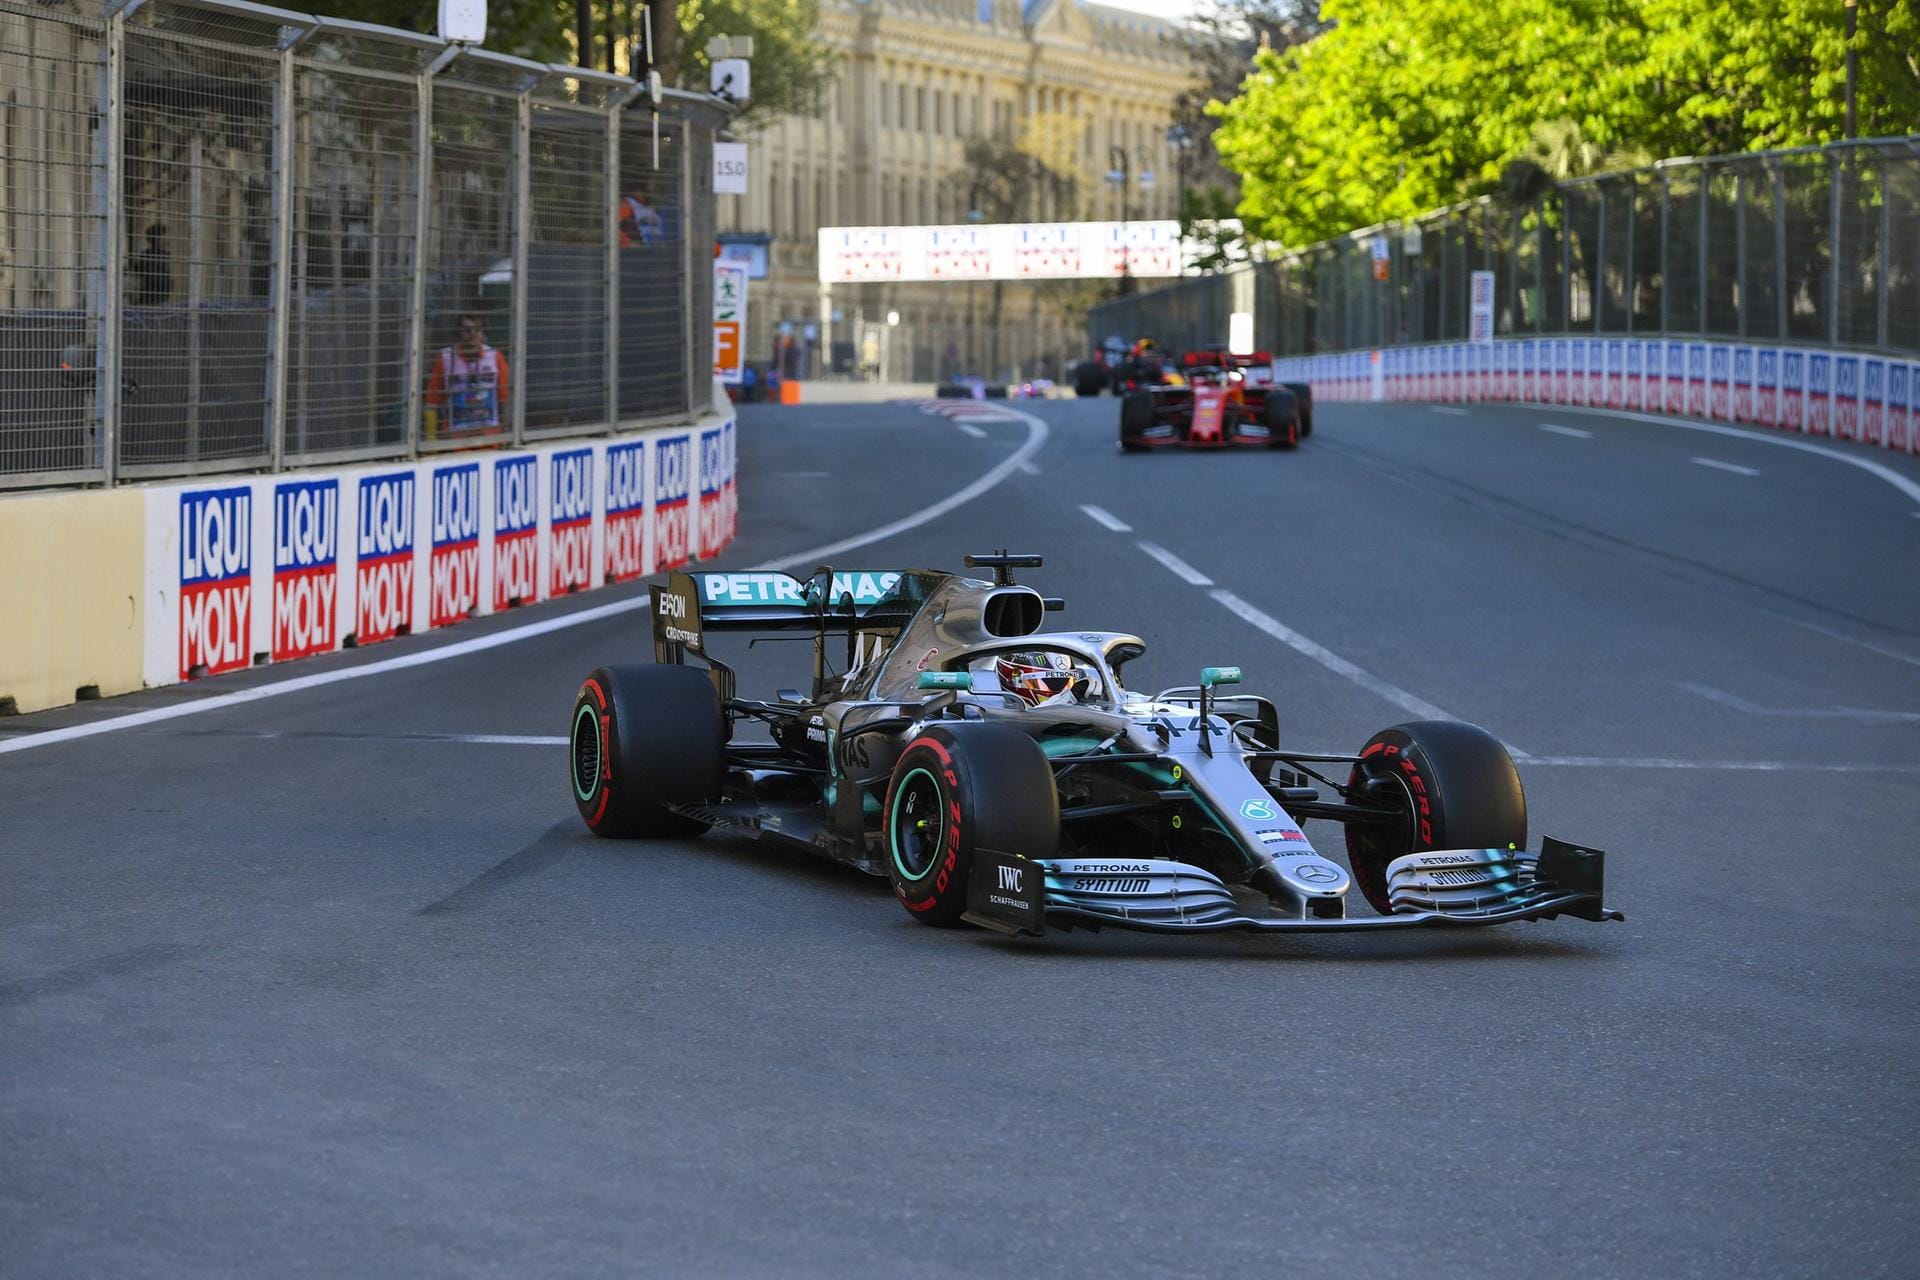 Großer Preis von Aserbaidschan: Ernüchterndes Rennen für Vettel. Auf dem Stadtkurs von Baku ist der Ferrari-Pilot chancenlos gegen die übermächtigen Mercedes, wird mit großem Abstand auf Sieger Bottas und den Zweiten Hamilton Dritter. Nun hat er bereits 35 Punkte Rückstand auf den WM-Führenden Hamilton.